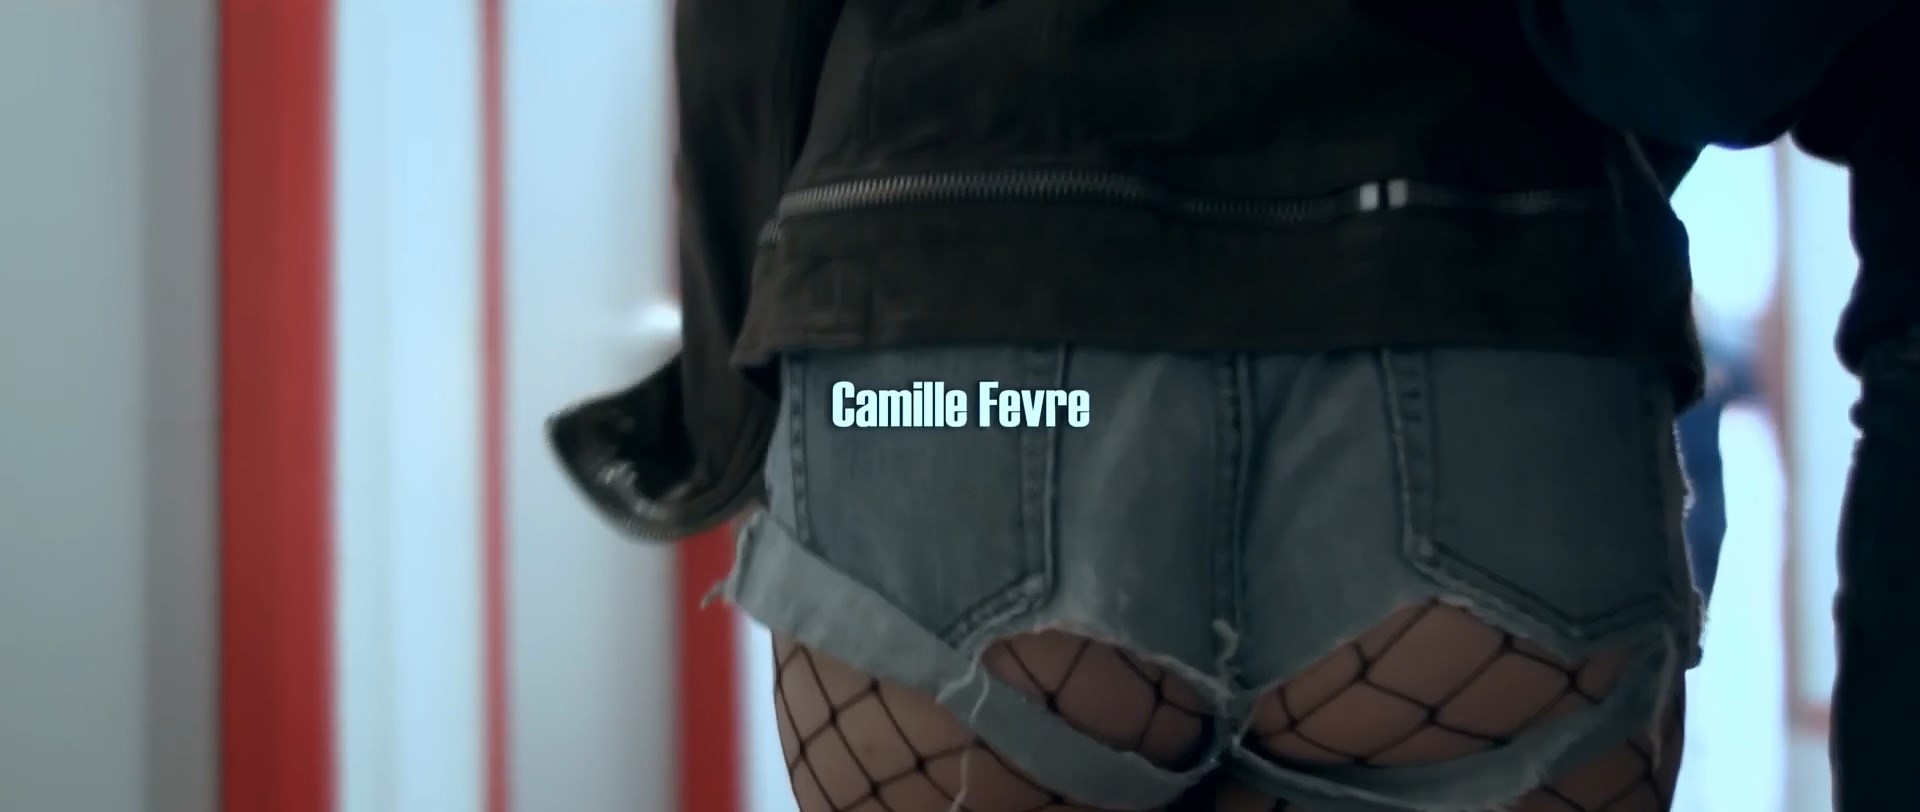 Camille Fevre  nackt